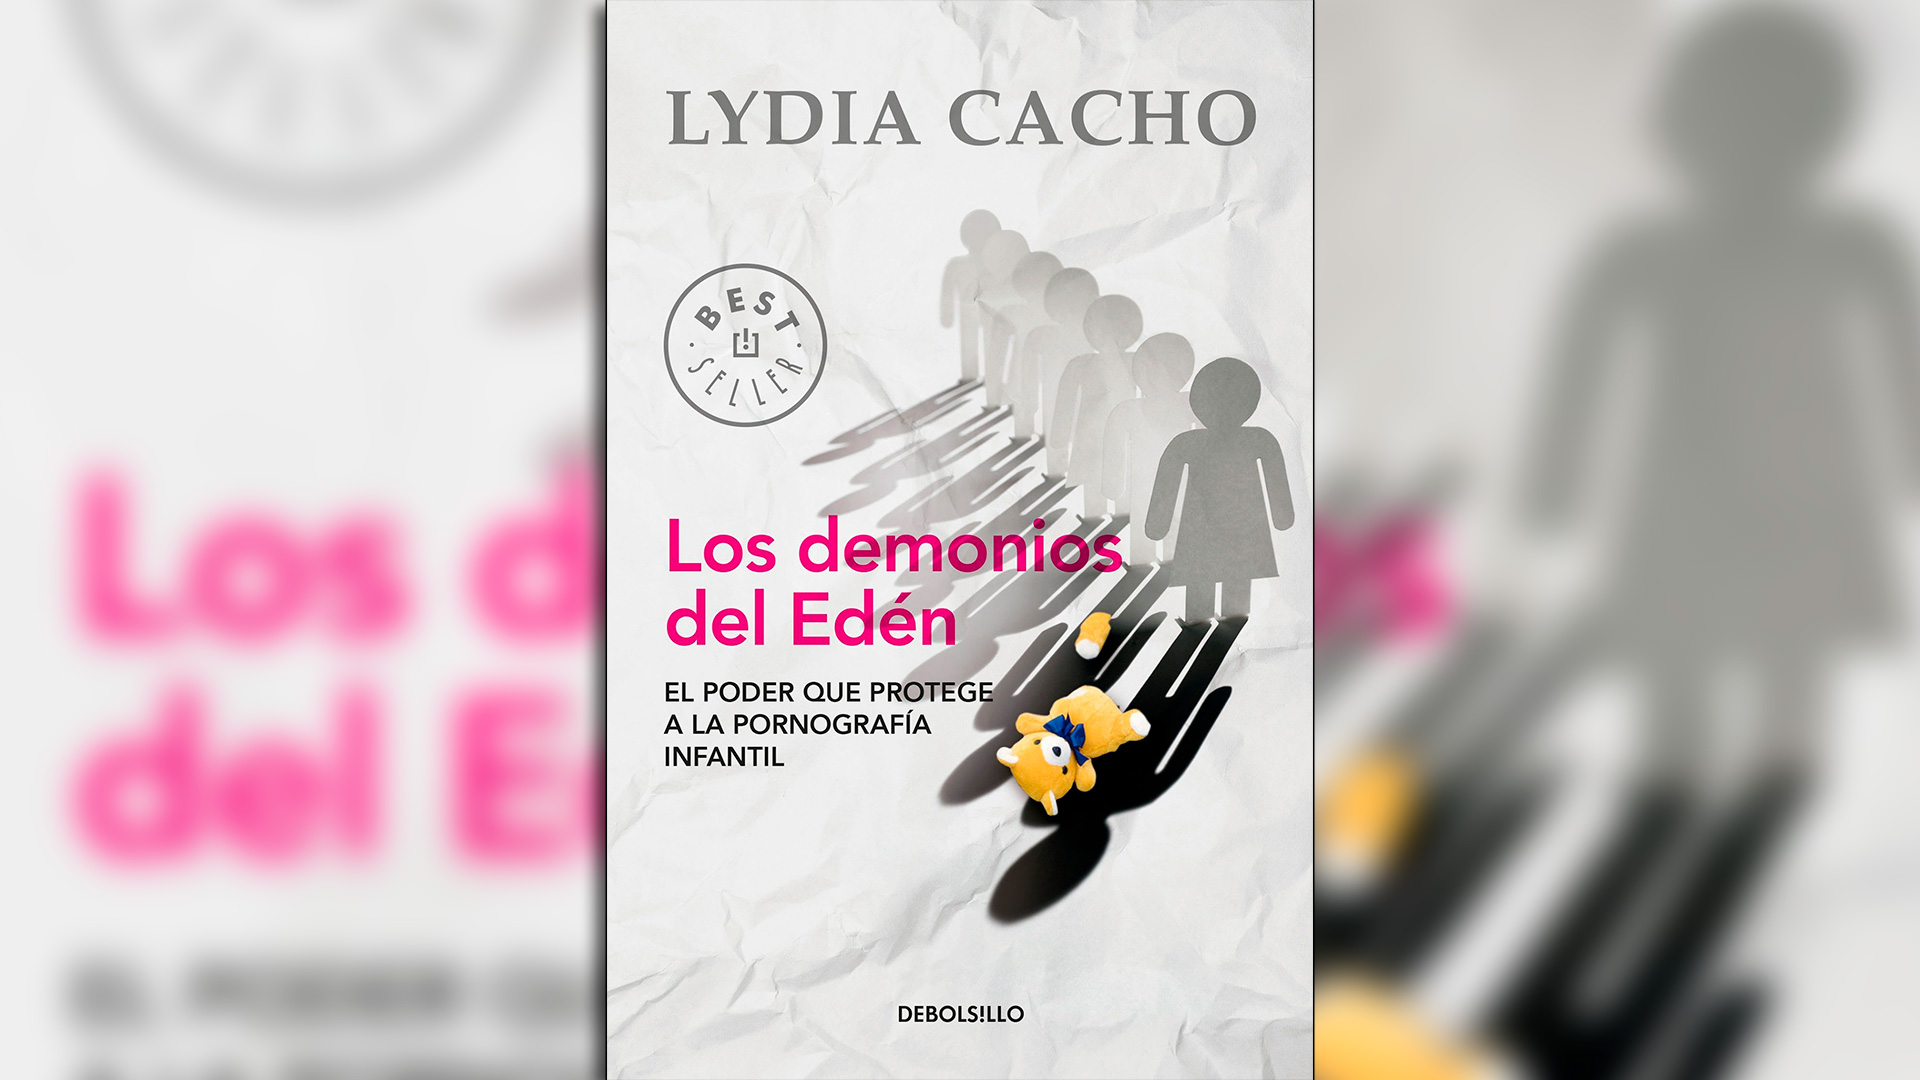 Portada del libro "Los demonios del Edén", de Lydia Cacho, en su edición DeBolsillo (Penguin Random House).